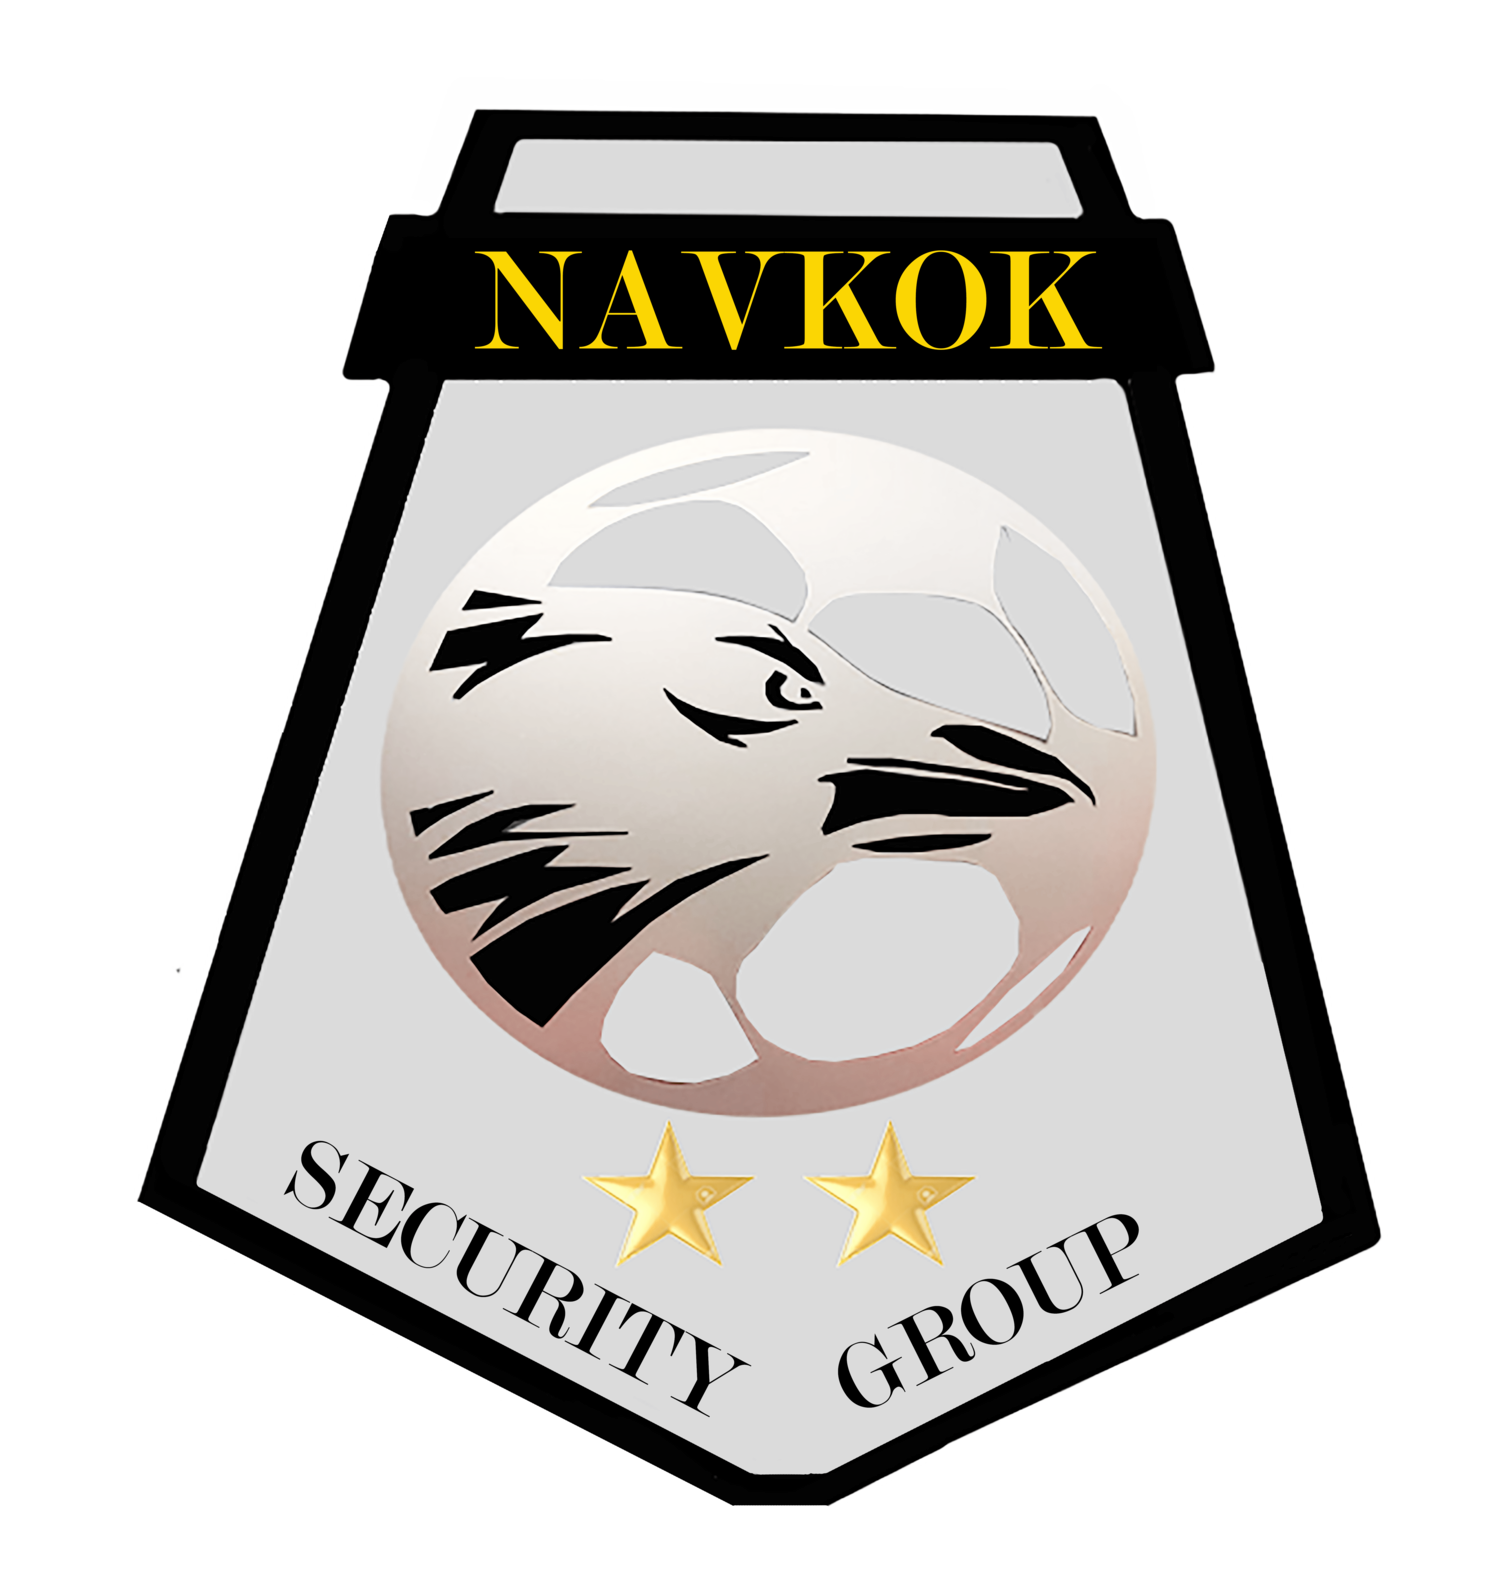 Navkok Security Group